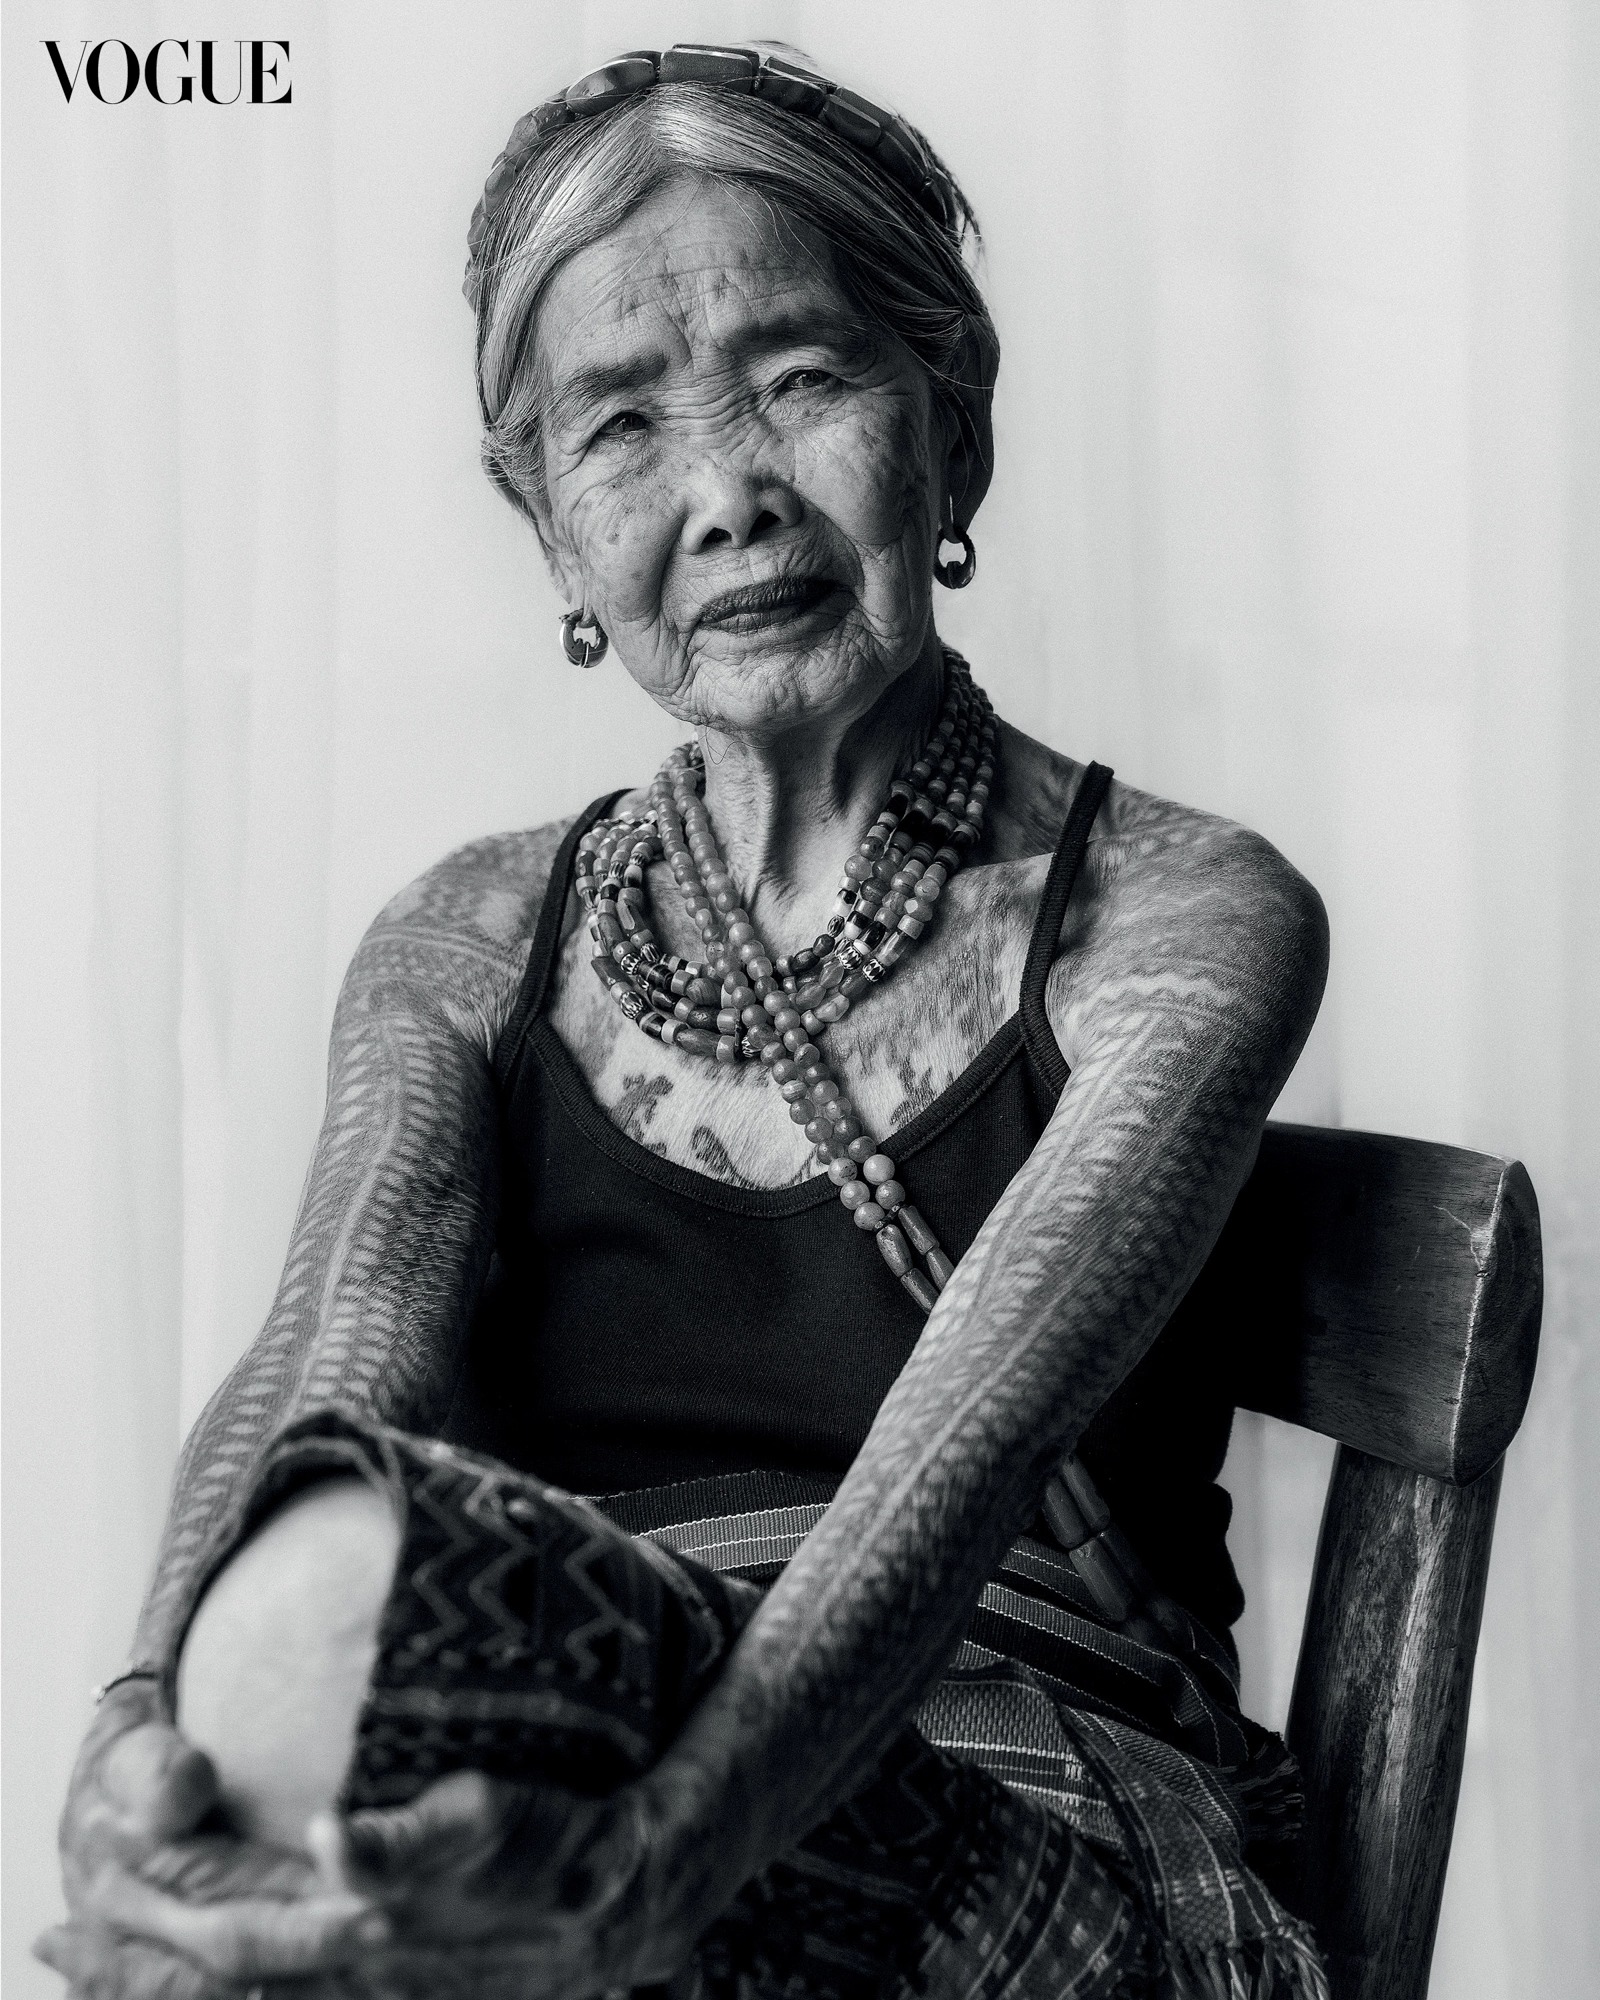 Nhân vật lên bìa tạp chí Vogue lạ chưa từng thấy: Cụ bà 106 tuổi với vẻ đẹp và tài năng khiến giới trẻ chạy dài mới theo kịp-4